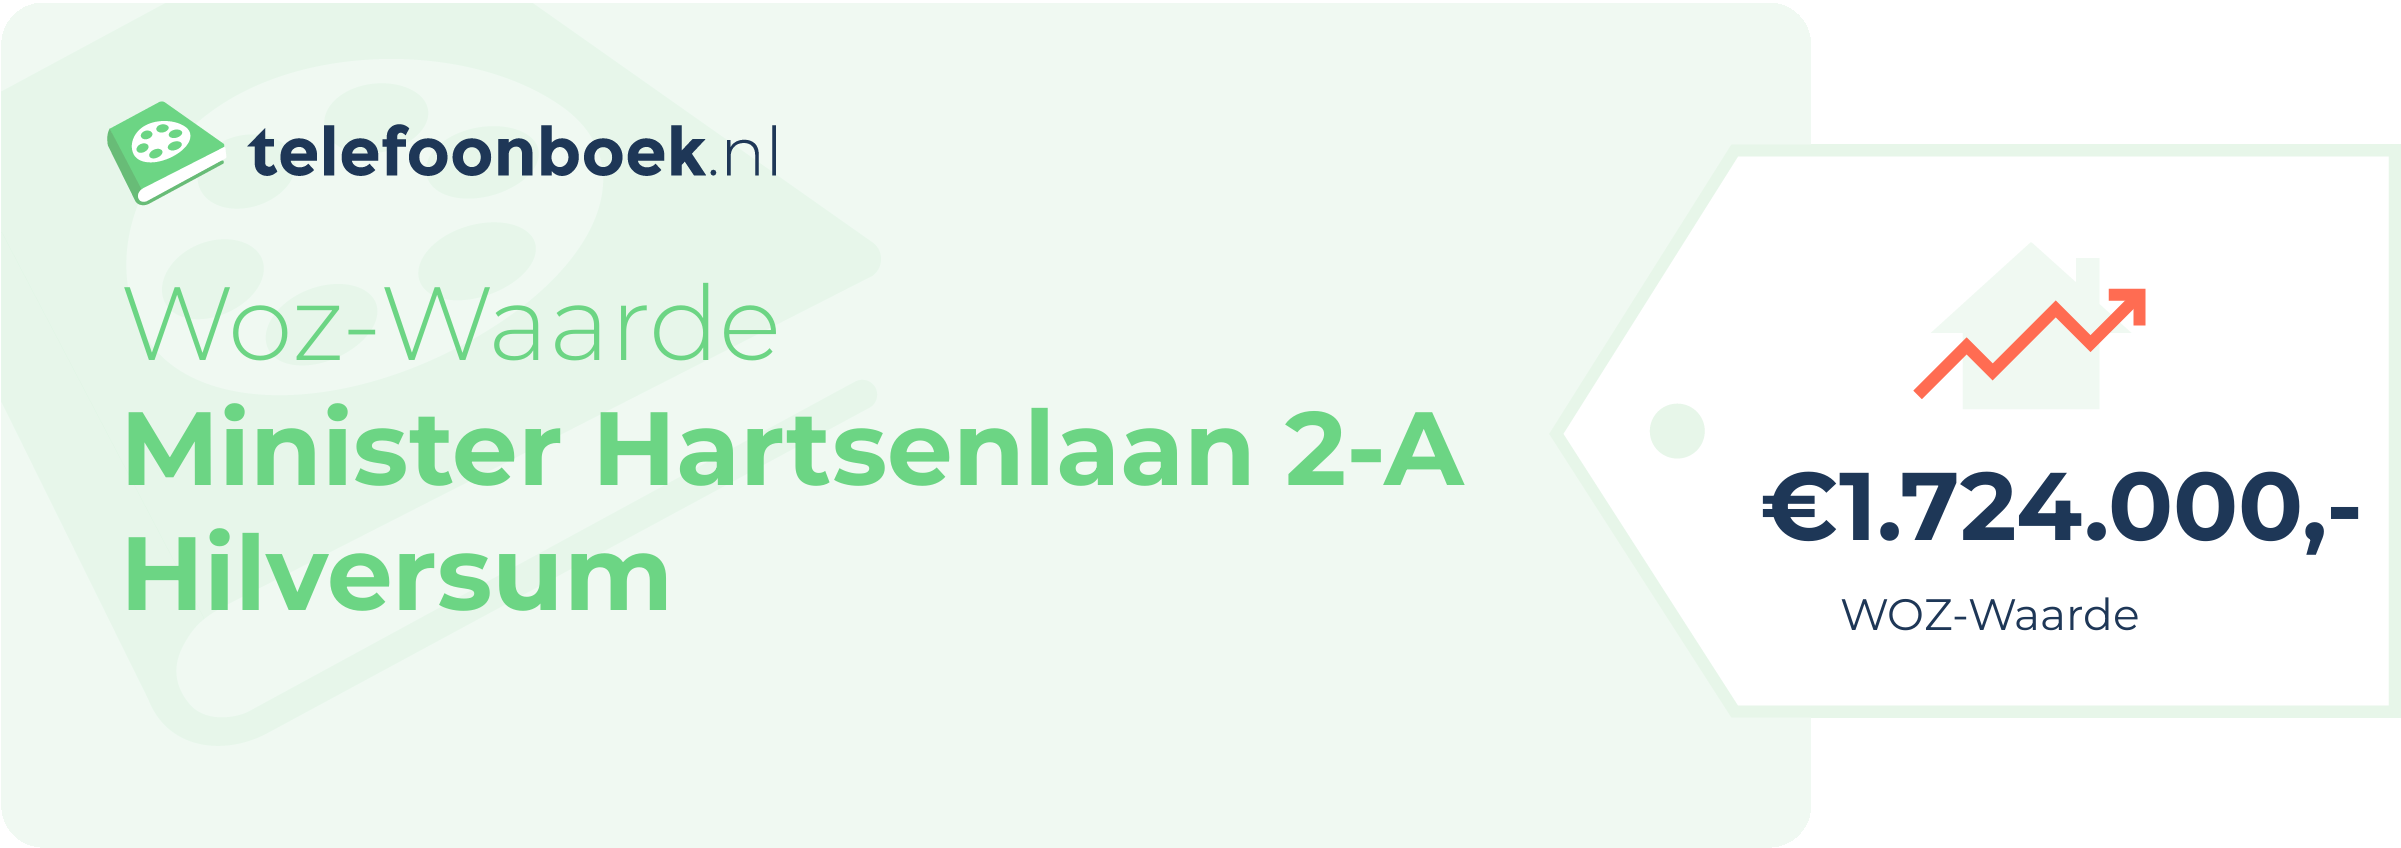 WOZ-waarde Minister Hartsenlaan 2-A Hilversum